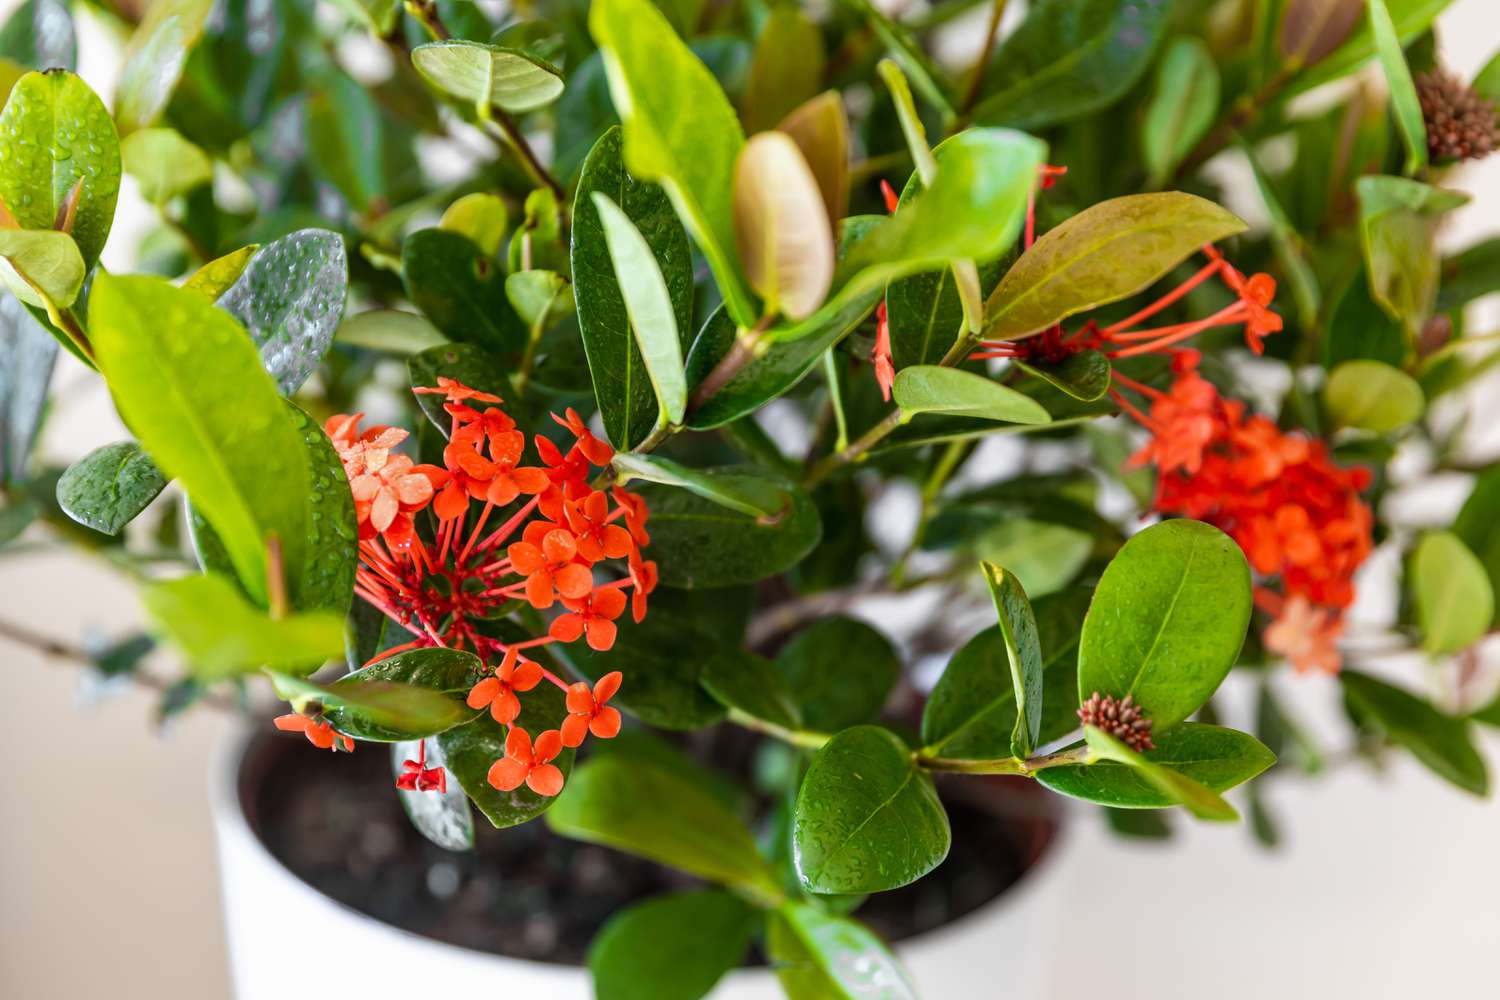 Ixora planta en maceta con flores rojas y capullos primer plano